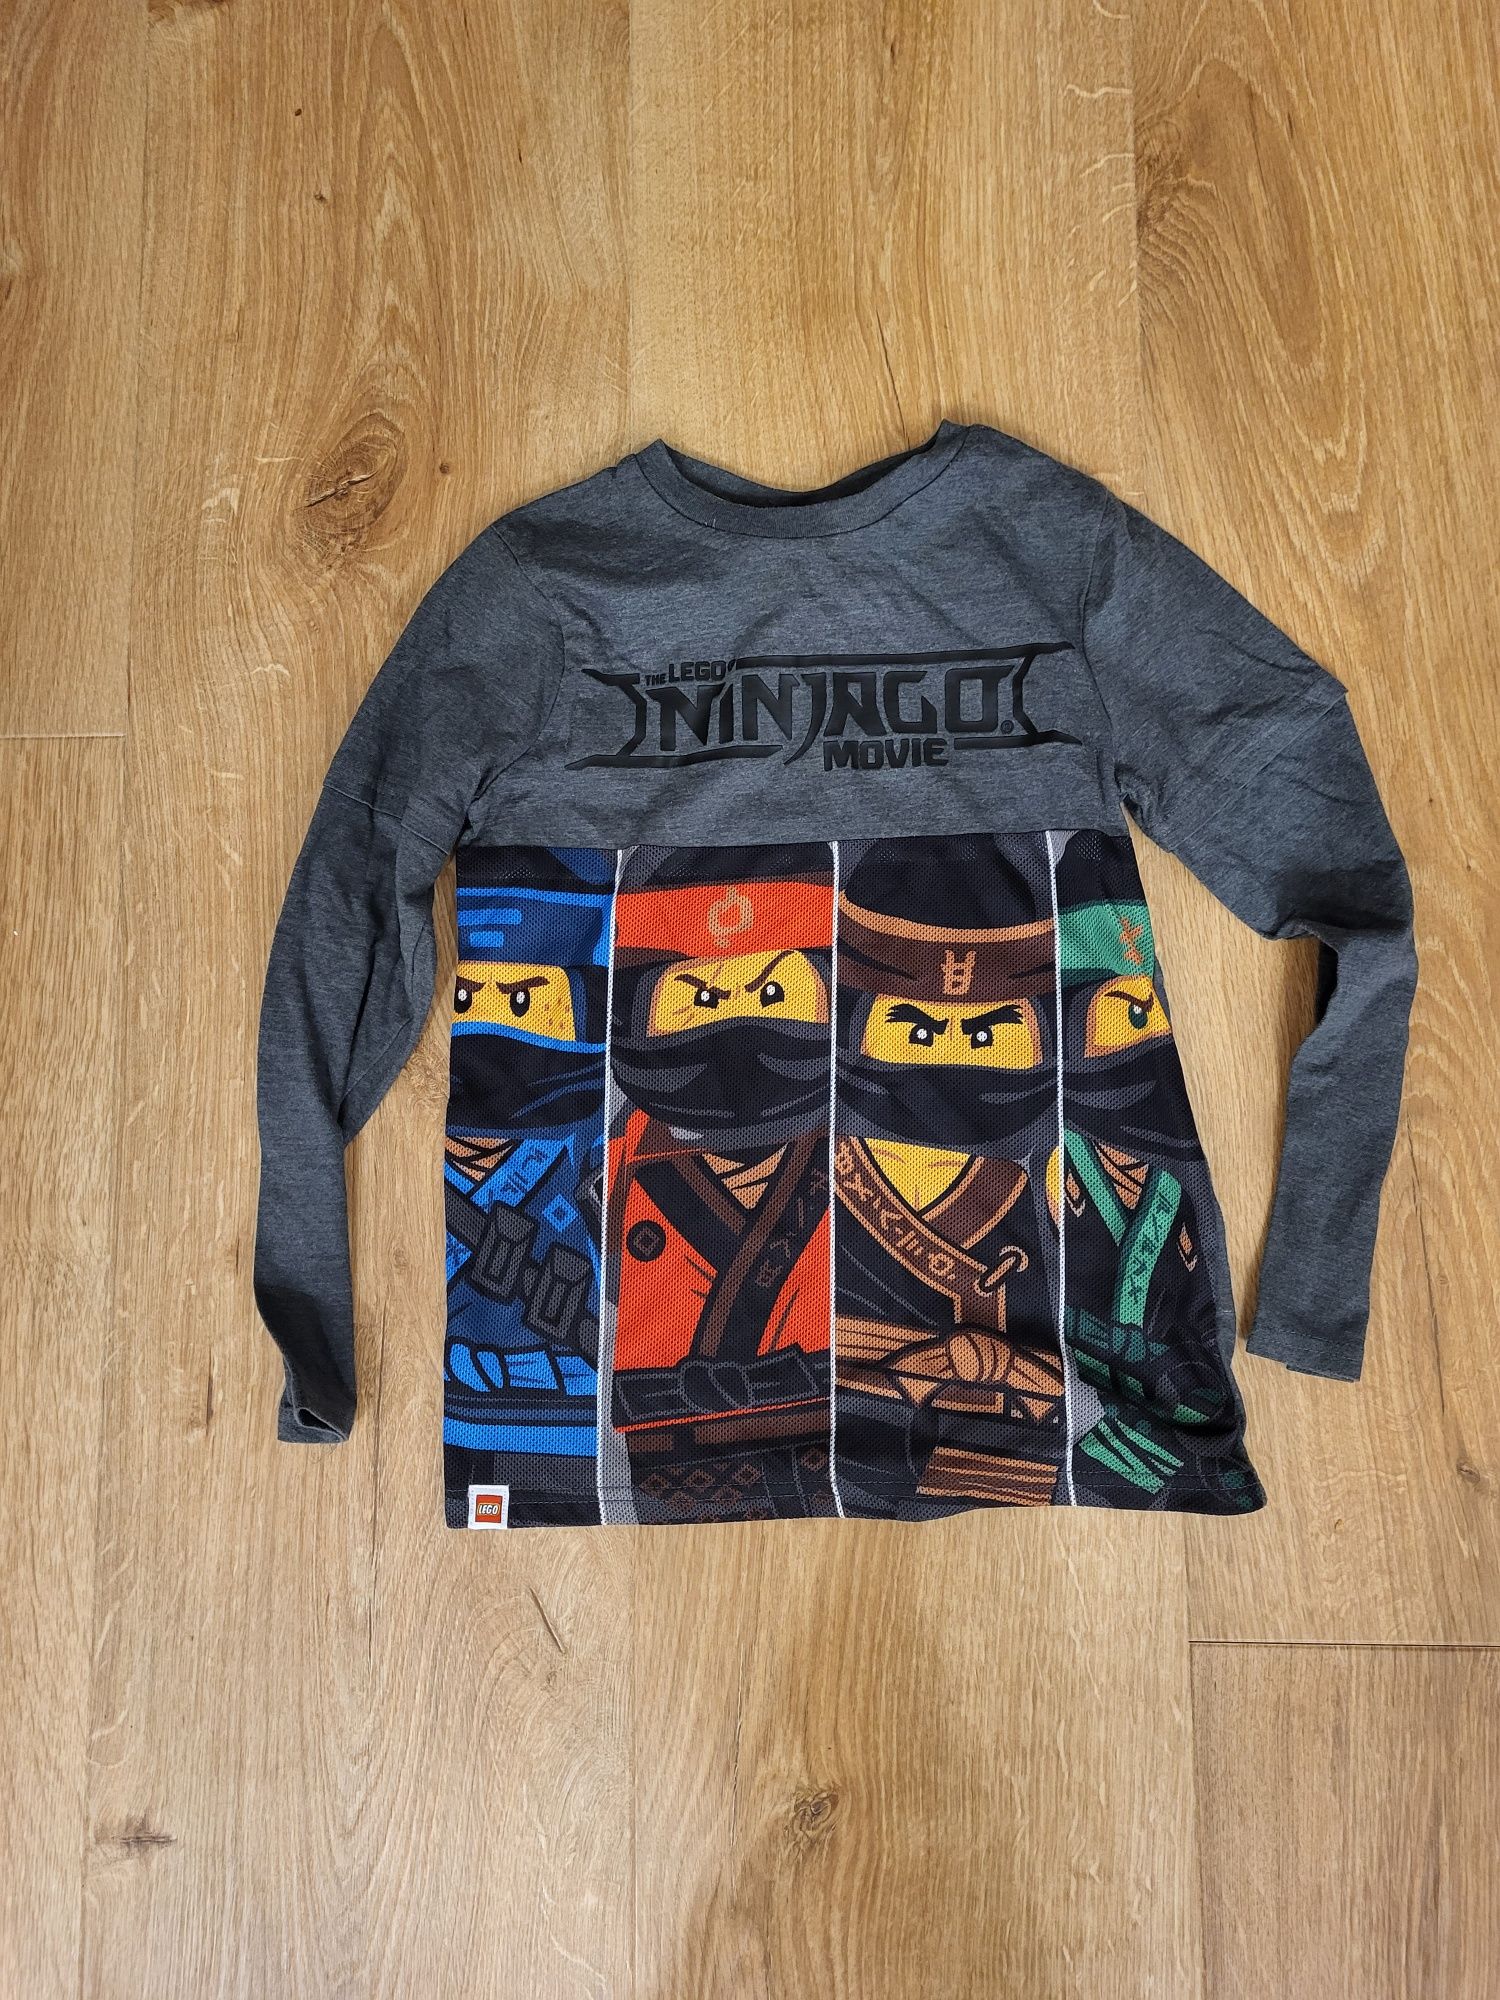 Koszulka ninjago w rozmiarze 122 - 128 cm